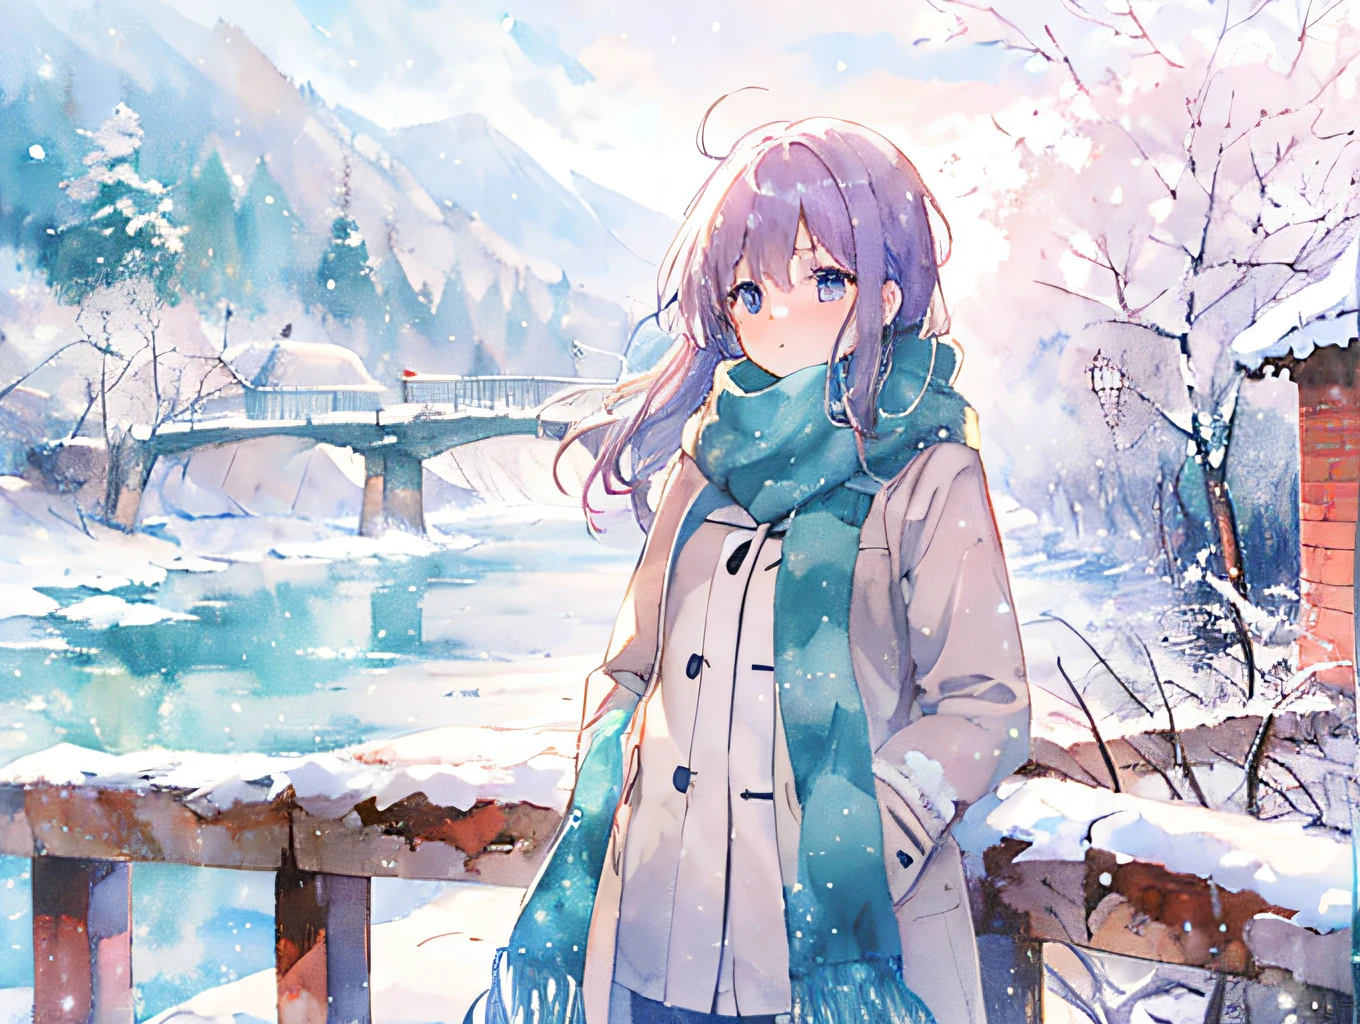 动漫风格的女孩, 桥, 雪景, 保暖外套和围巾, 看得见的呼吸, 柔软的, 水彩般的动漫风格, 白人和蓝调, 下雪天,